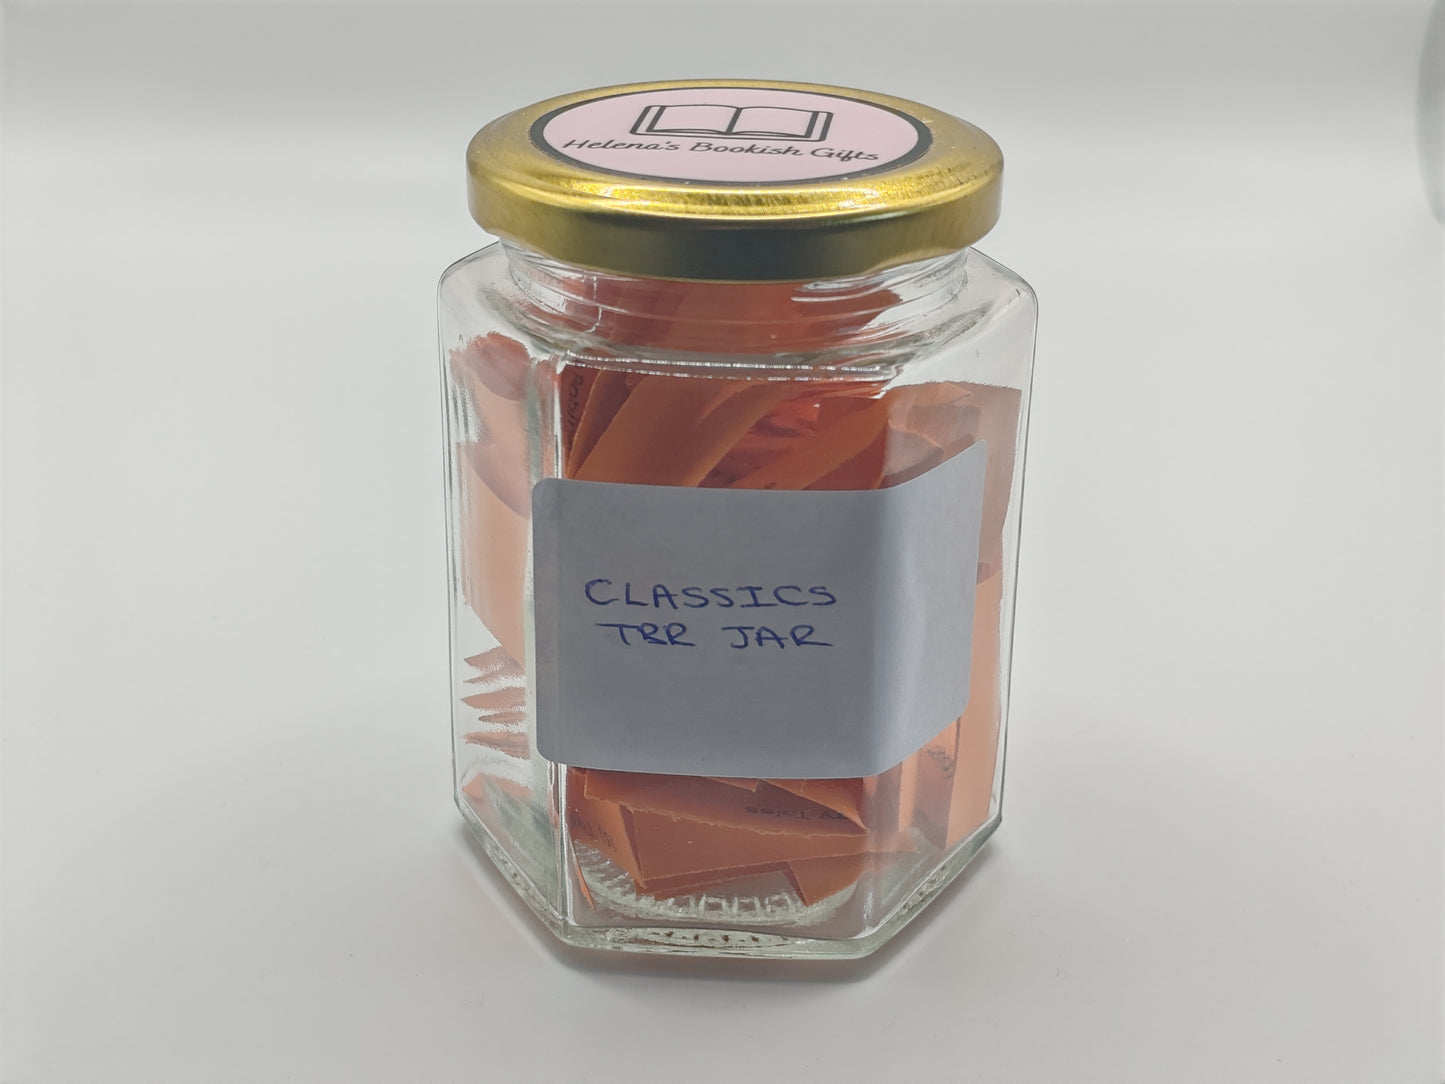 Classics TBR Jar